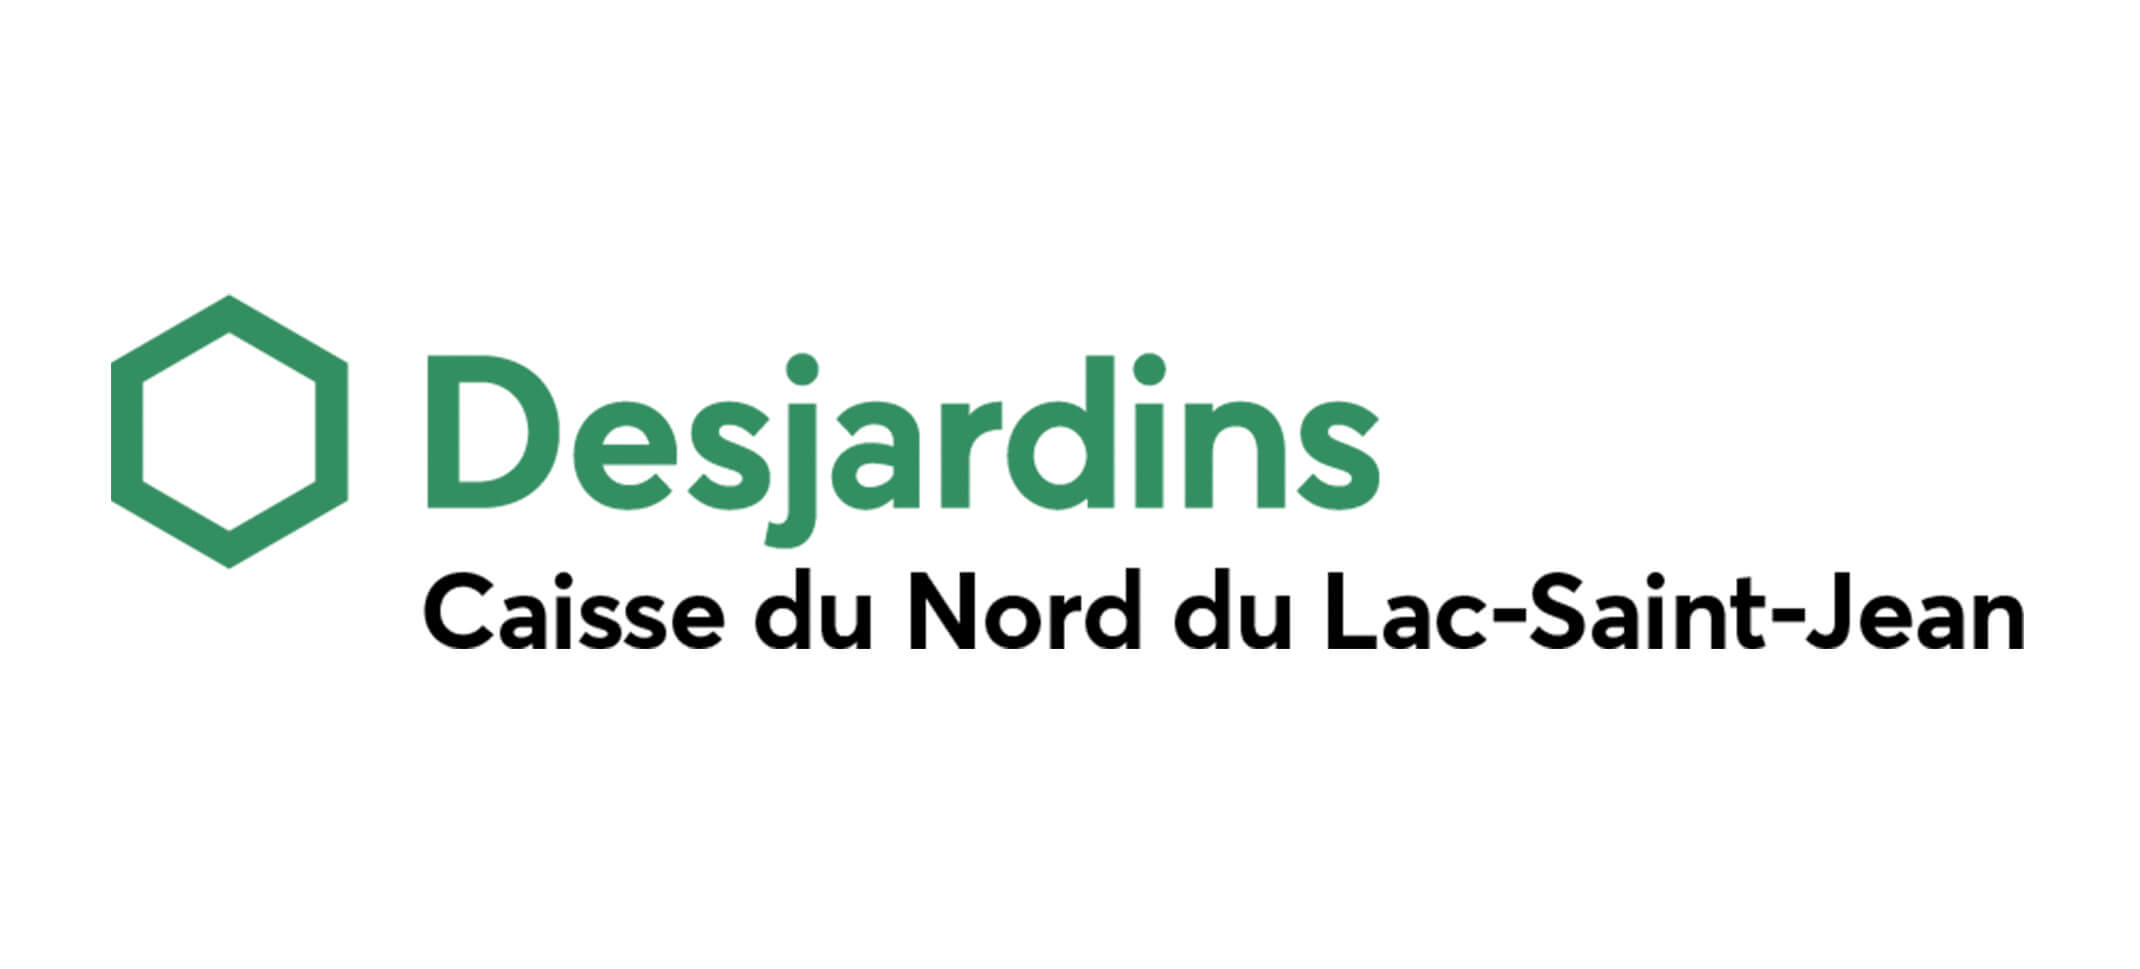 desjardins-caisse-du-nord-du-lac-saint-jean